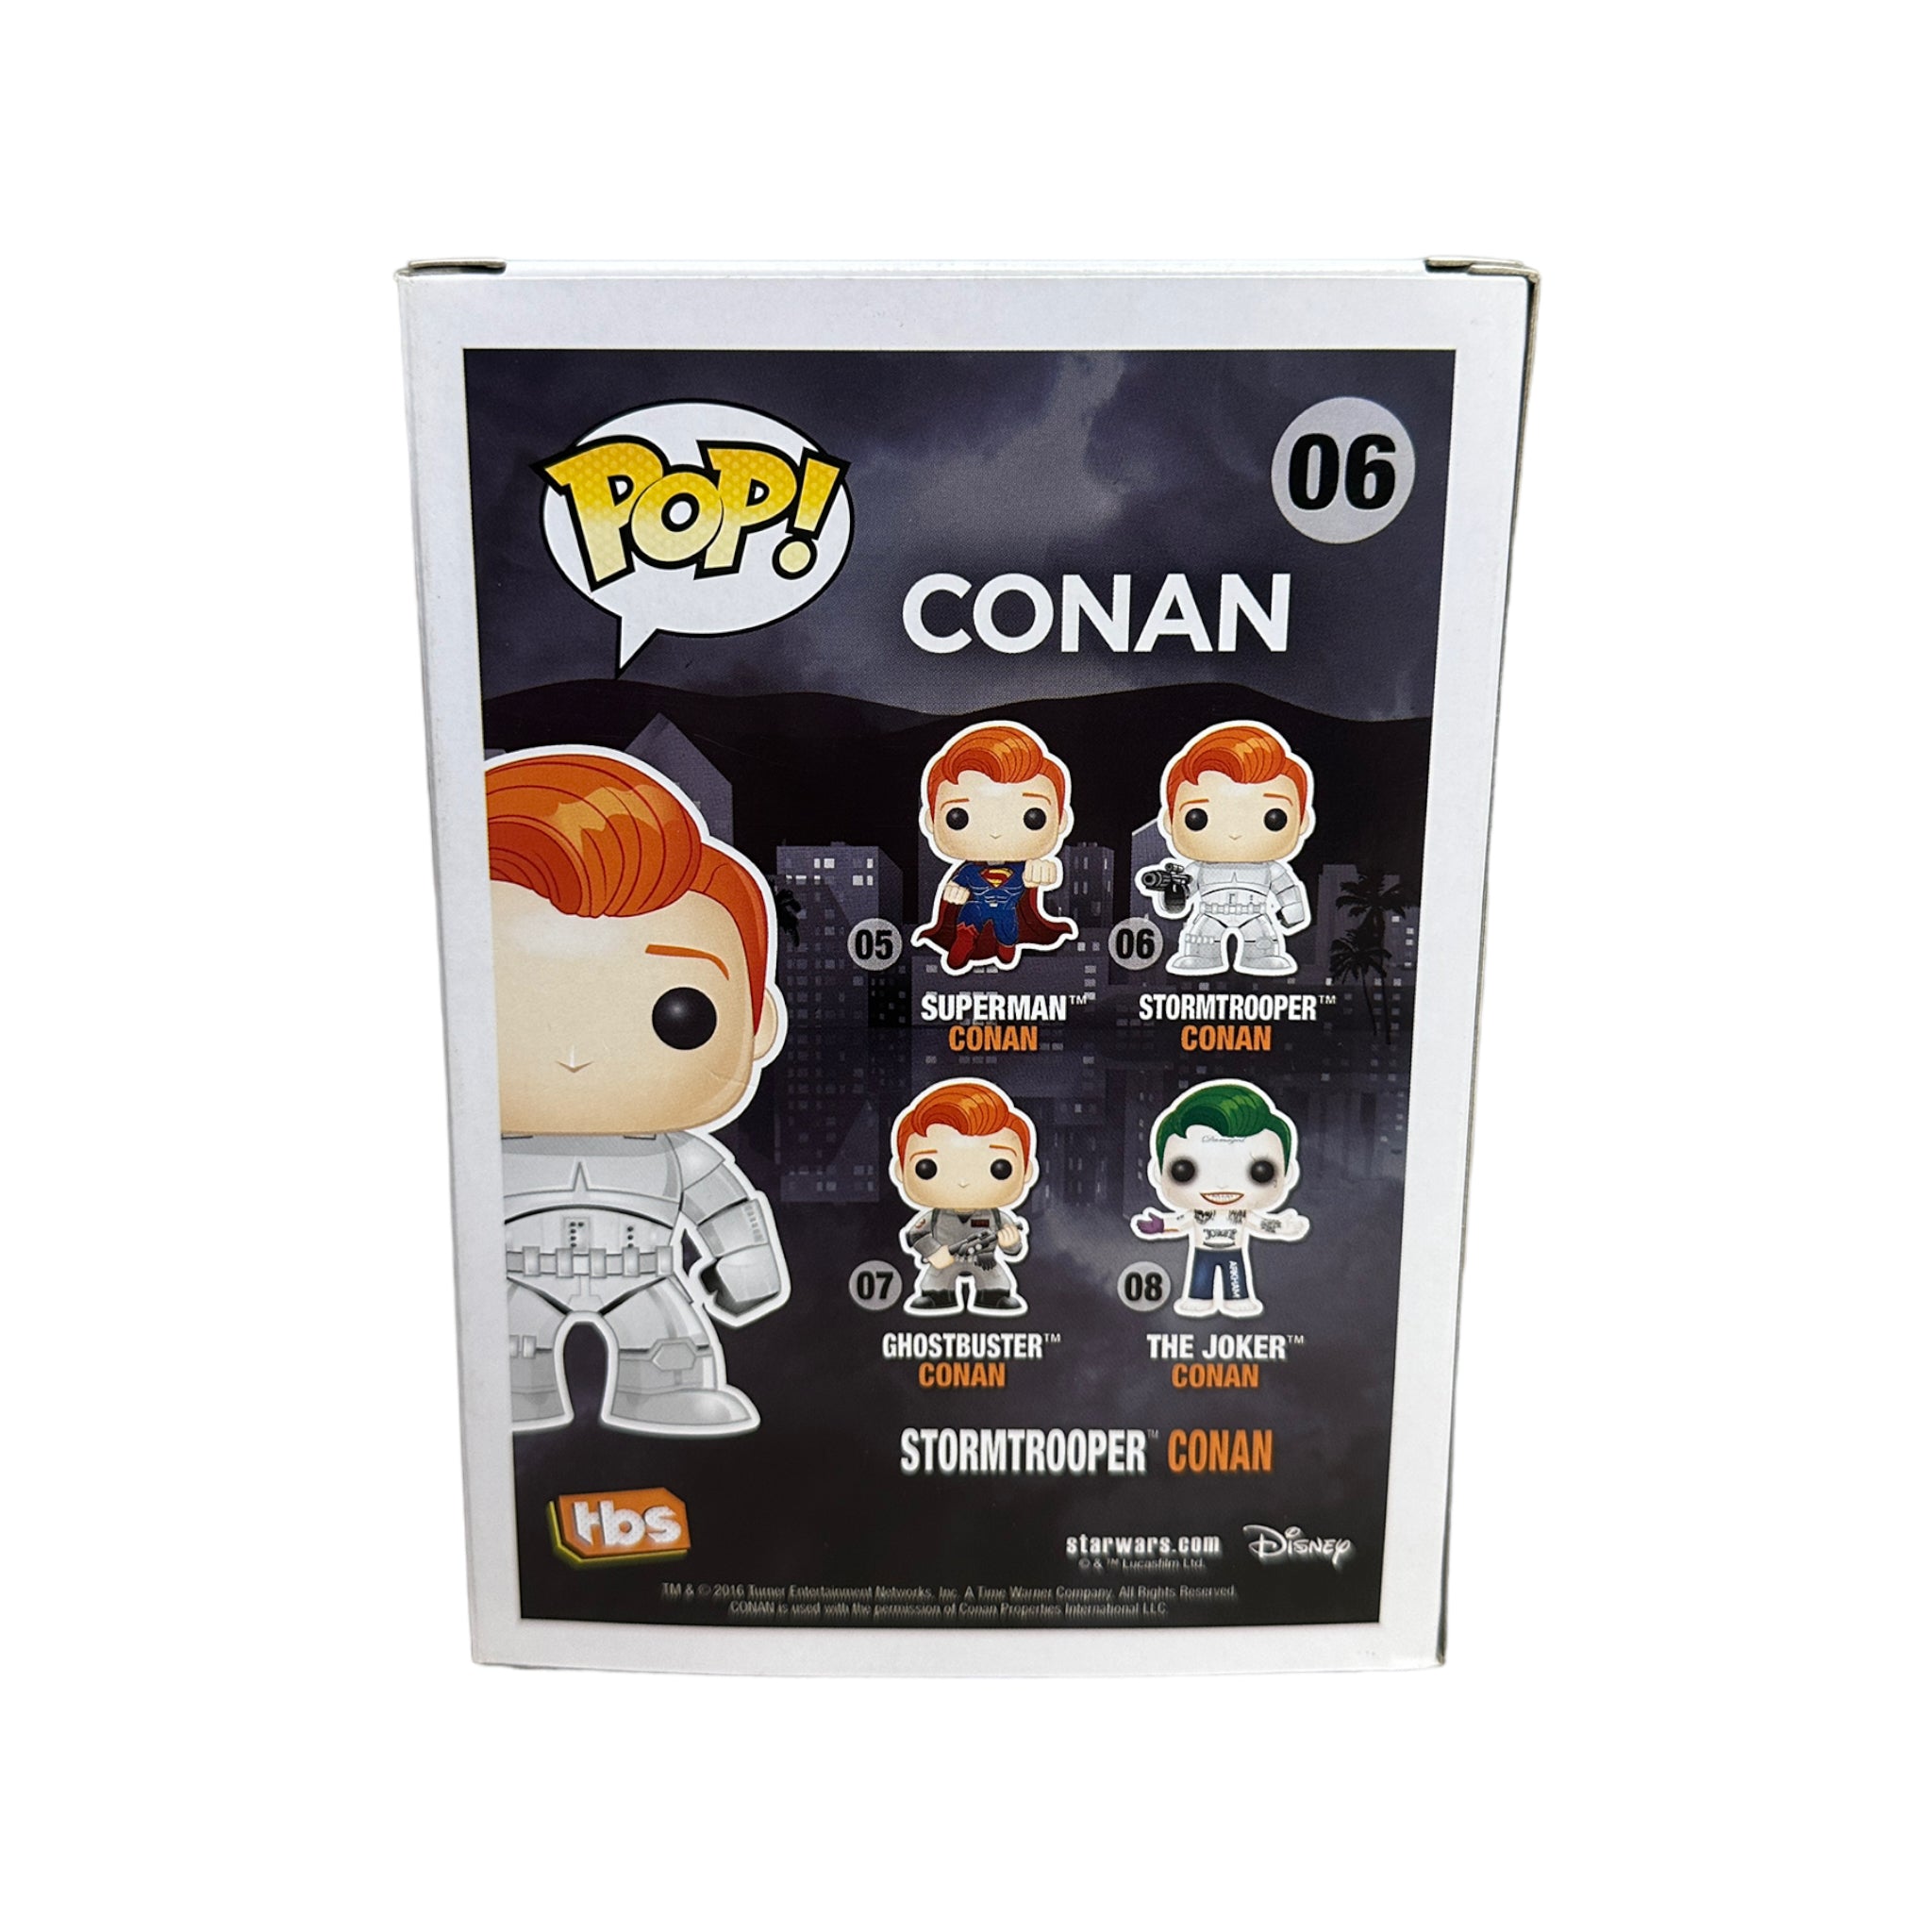 Stormtrooper Conan #06 Funko Pop! - Conan - SDCC 2016 Official Convention Exclusive - Condition 8.75/10